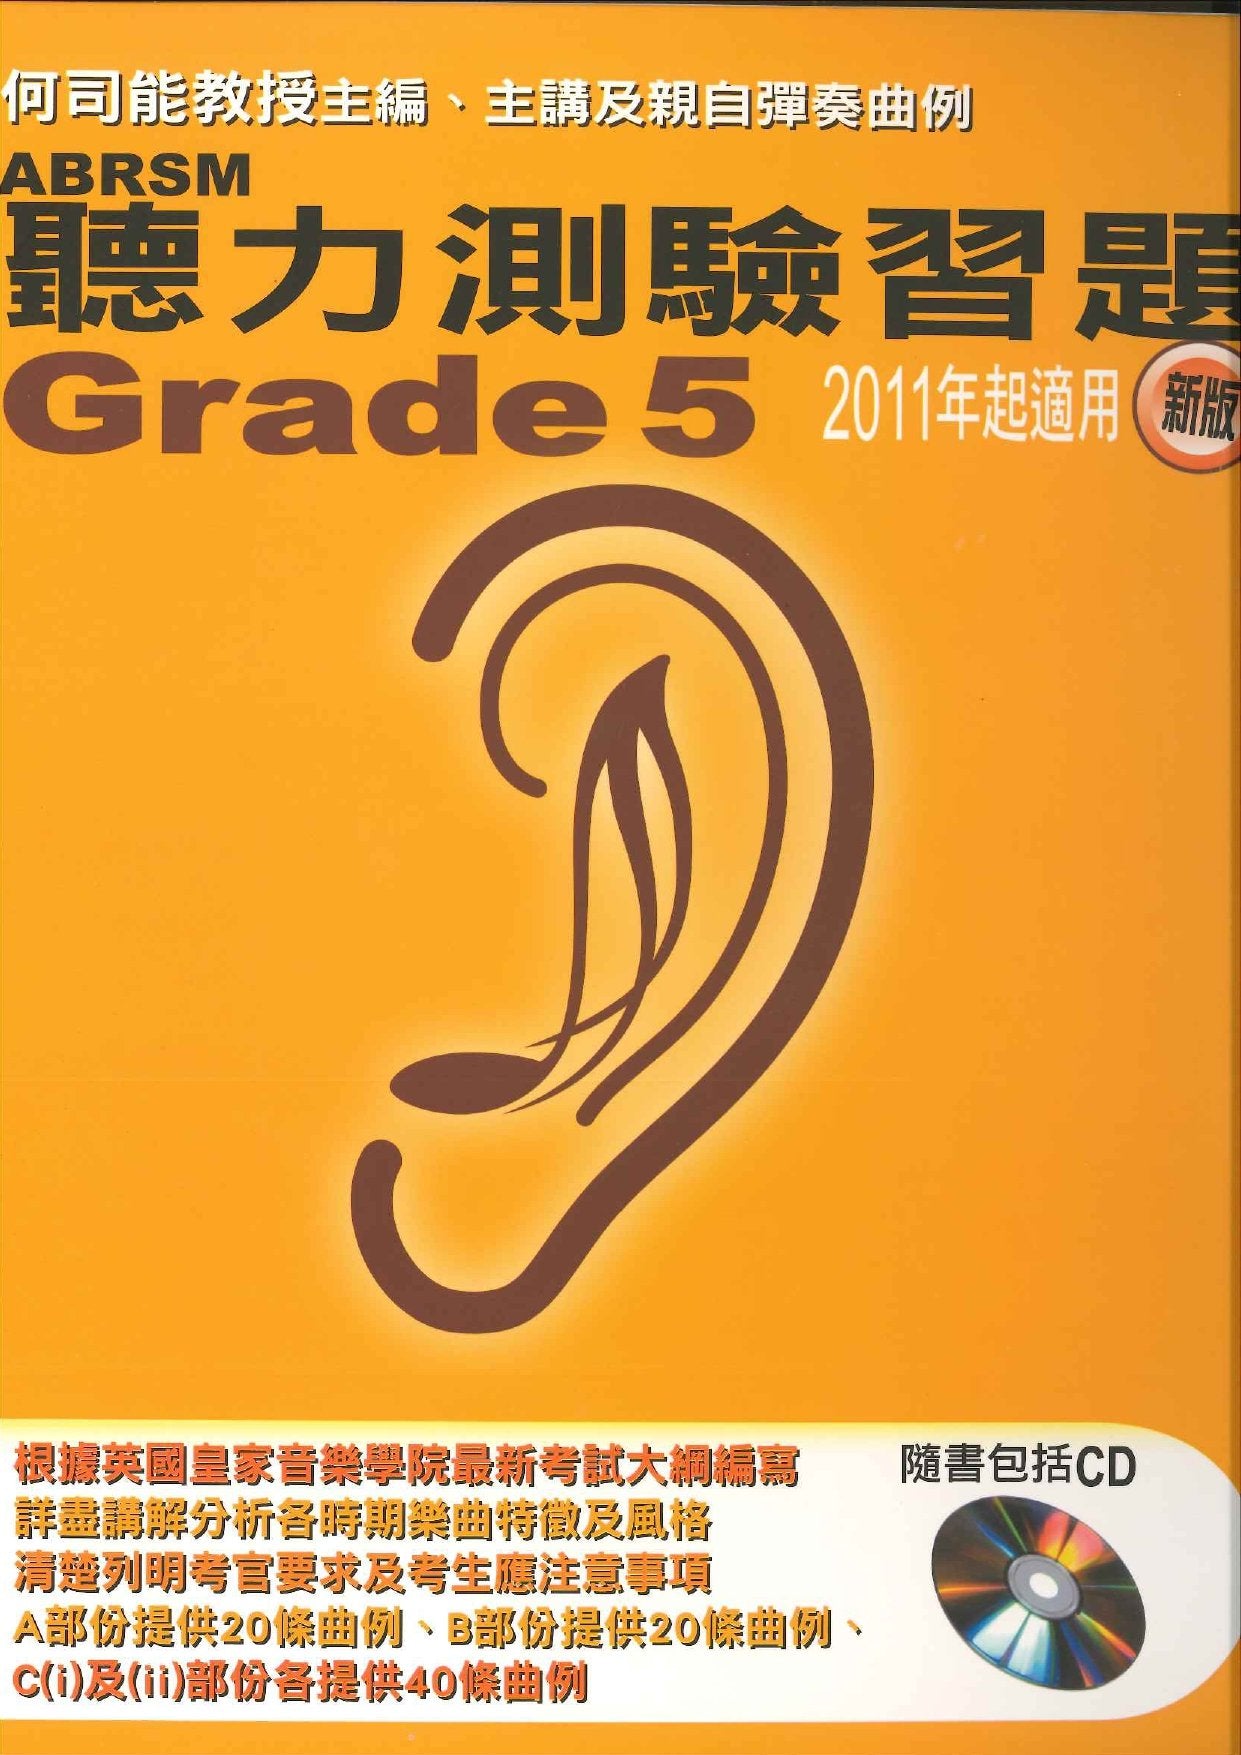 ABRSM 聽力測驗習題 Grade 5 連1CD (2011新版)